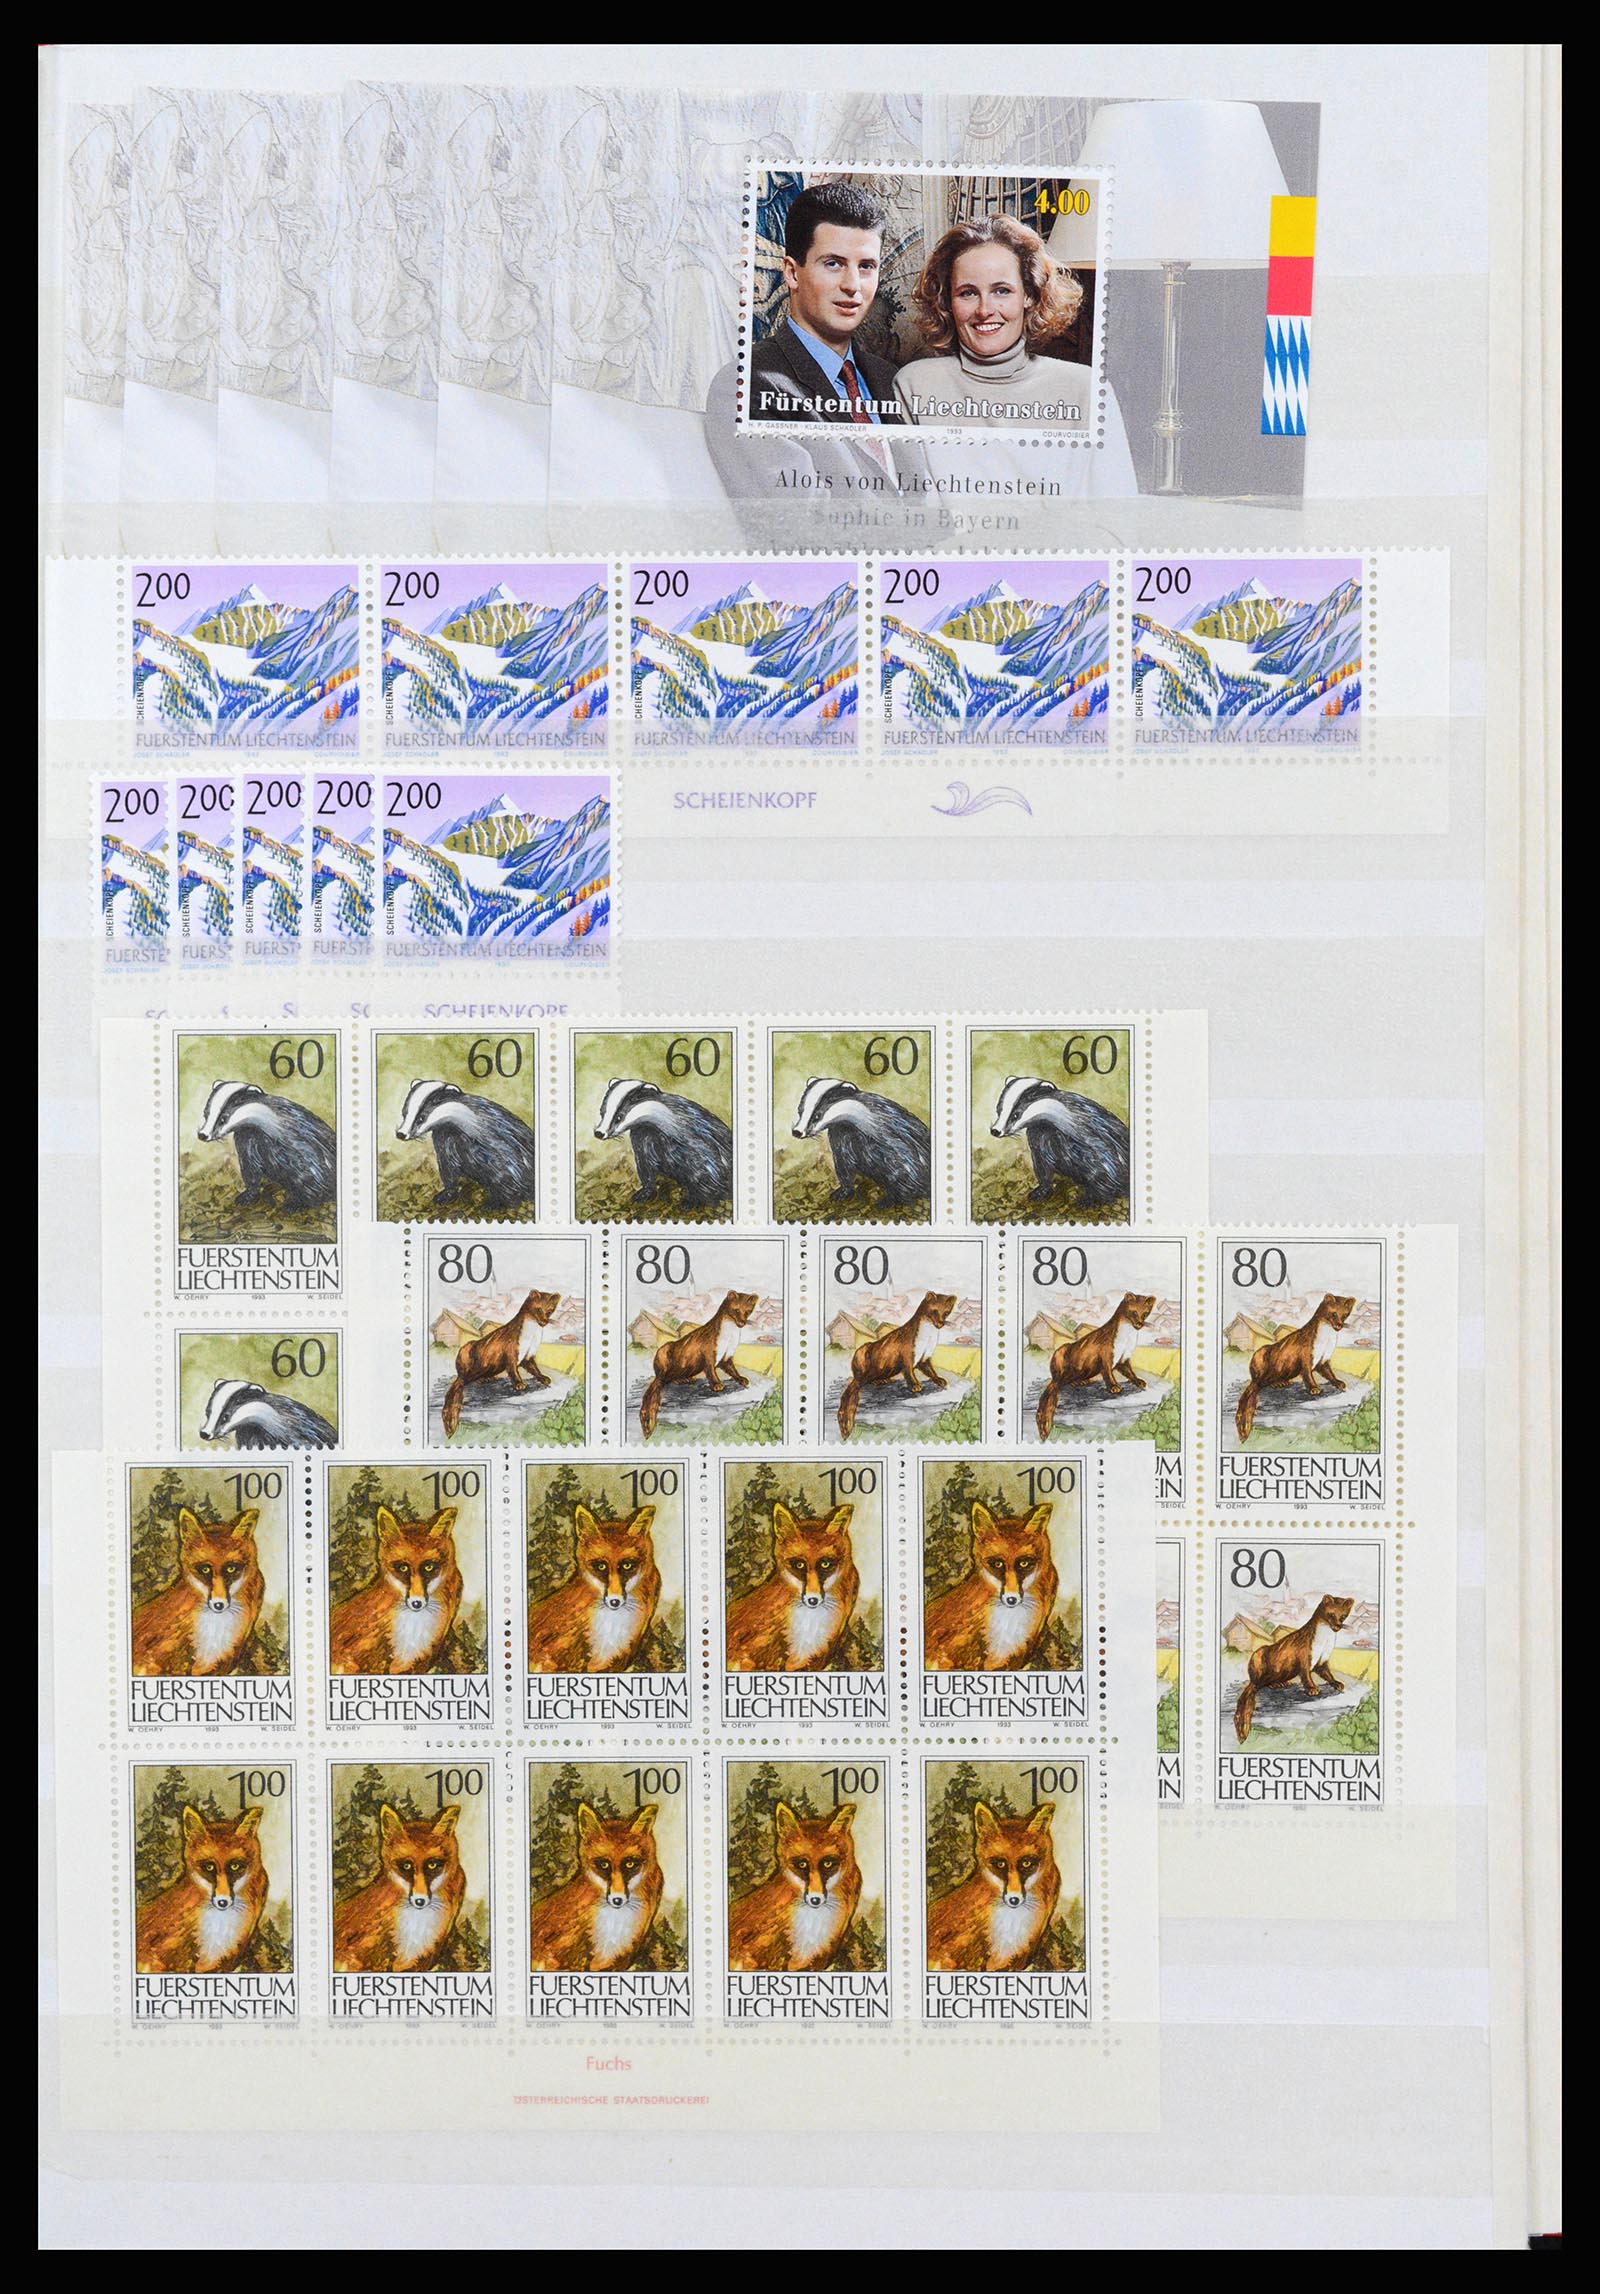 37261 111 - Stamp collection 37261 Liechtenstein 1961-1995.